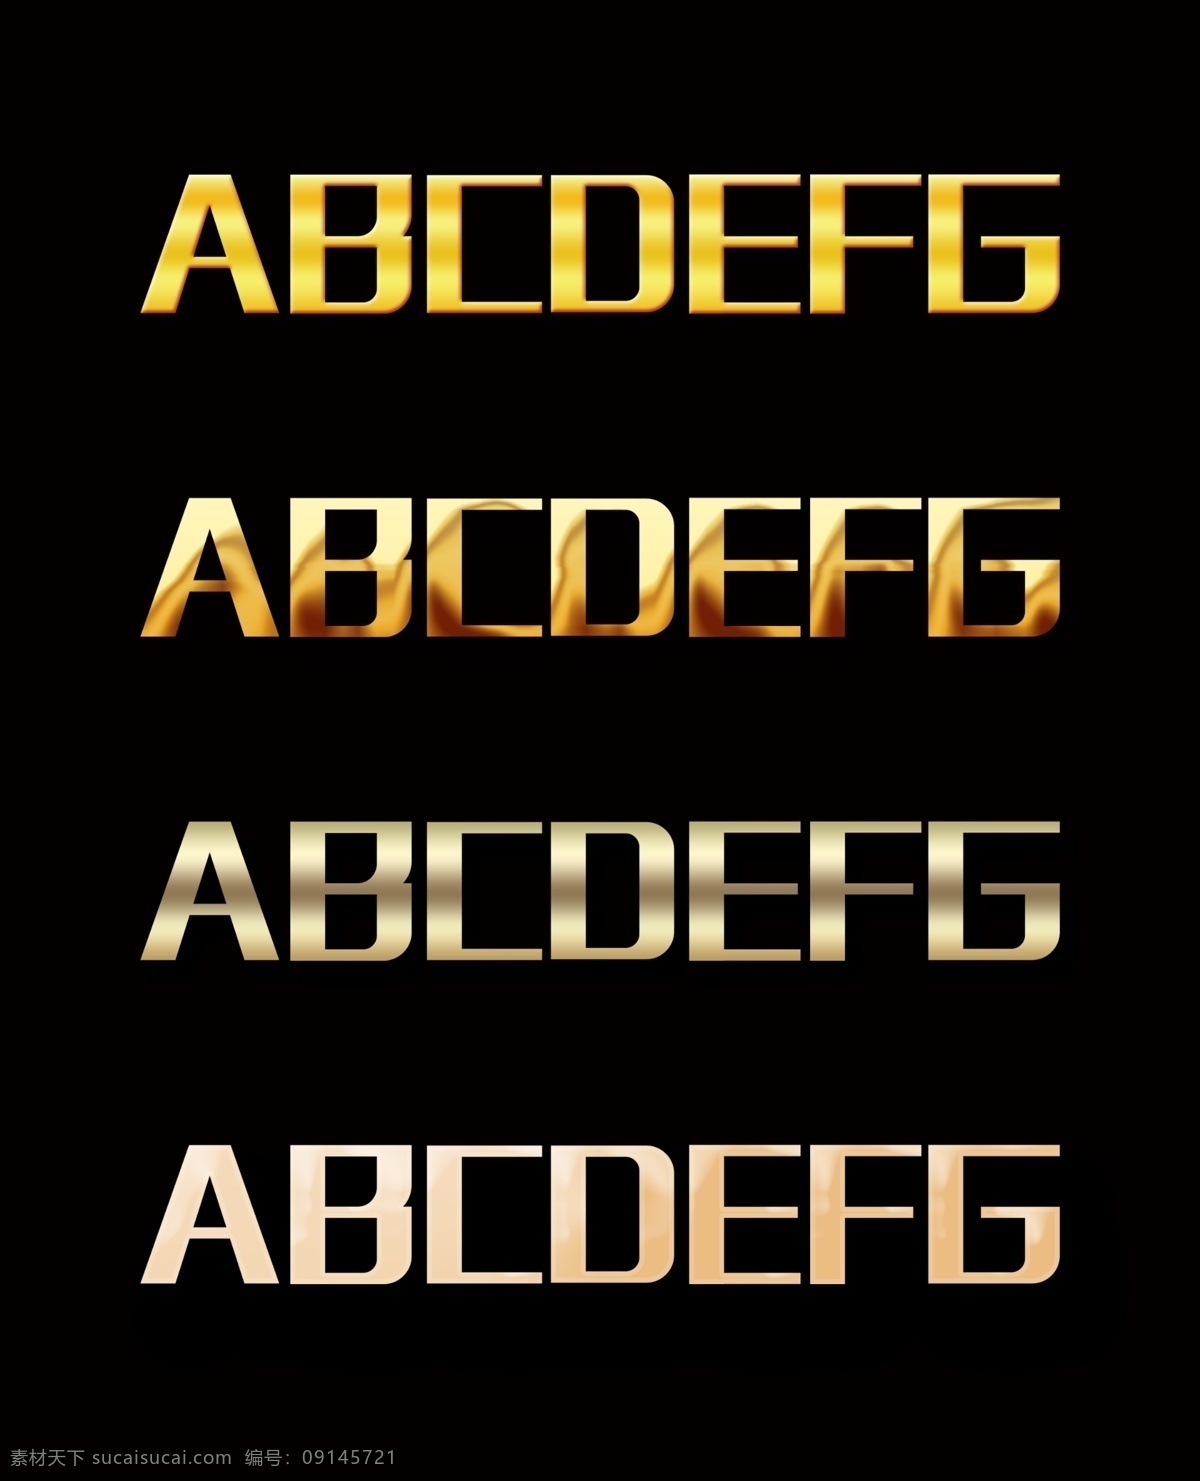 金色字体样式 大气字体样式 设计字体样式 金色字 立体字 立体金色字